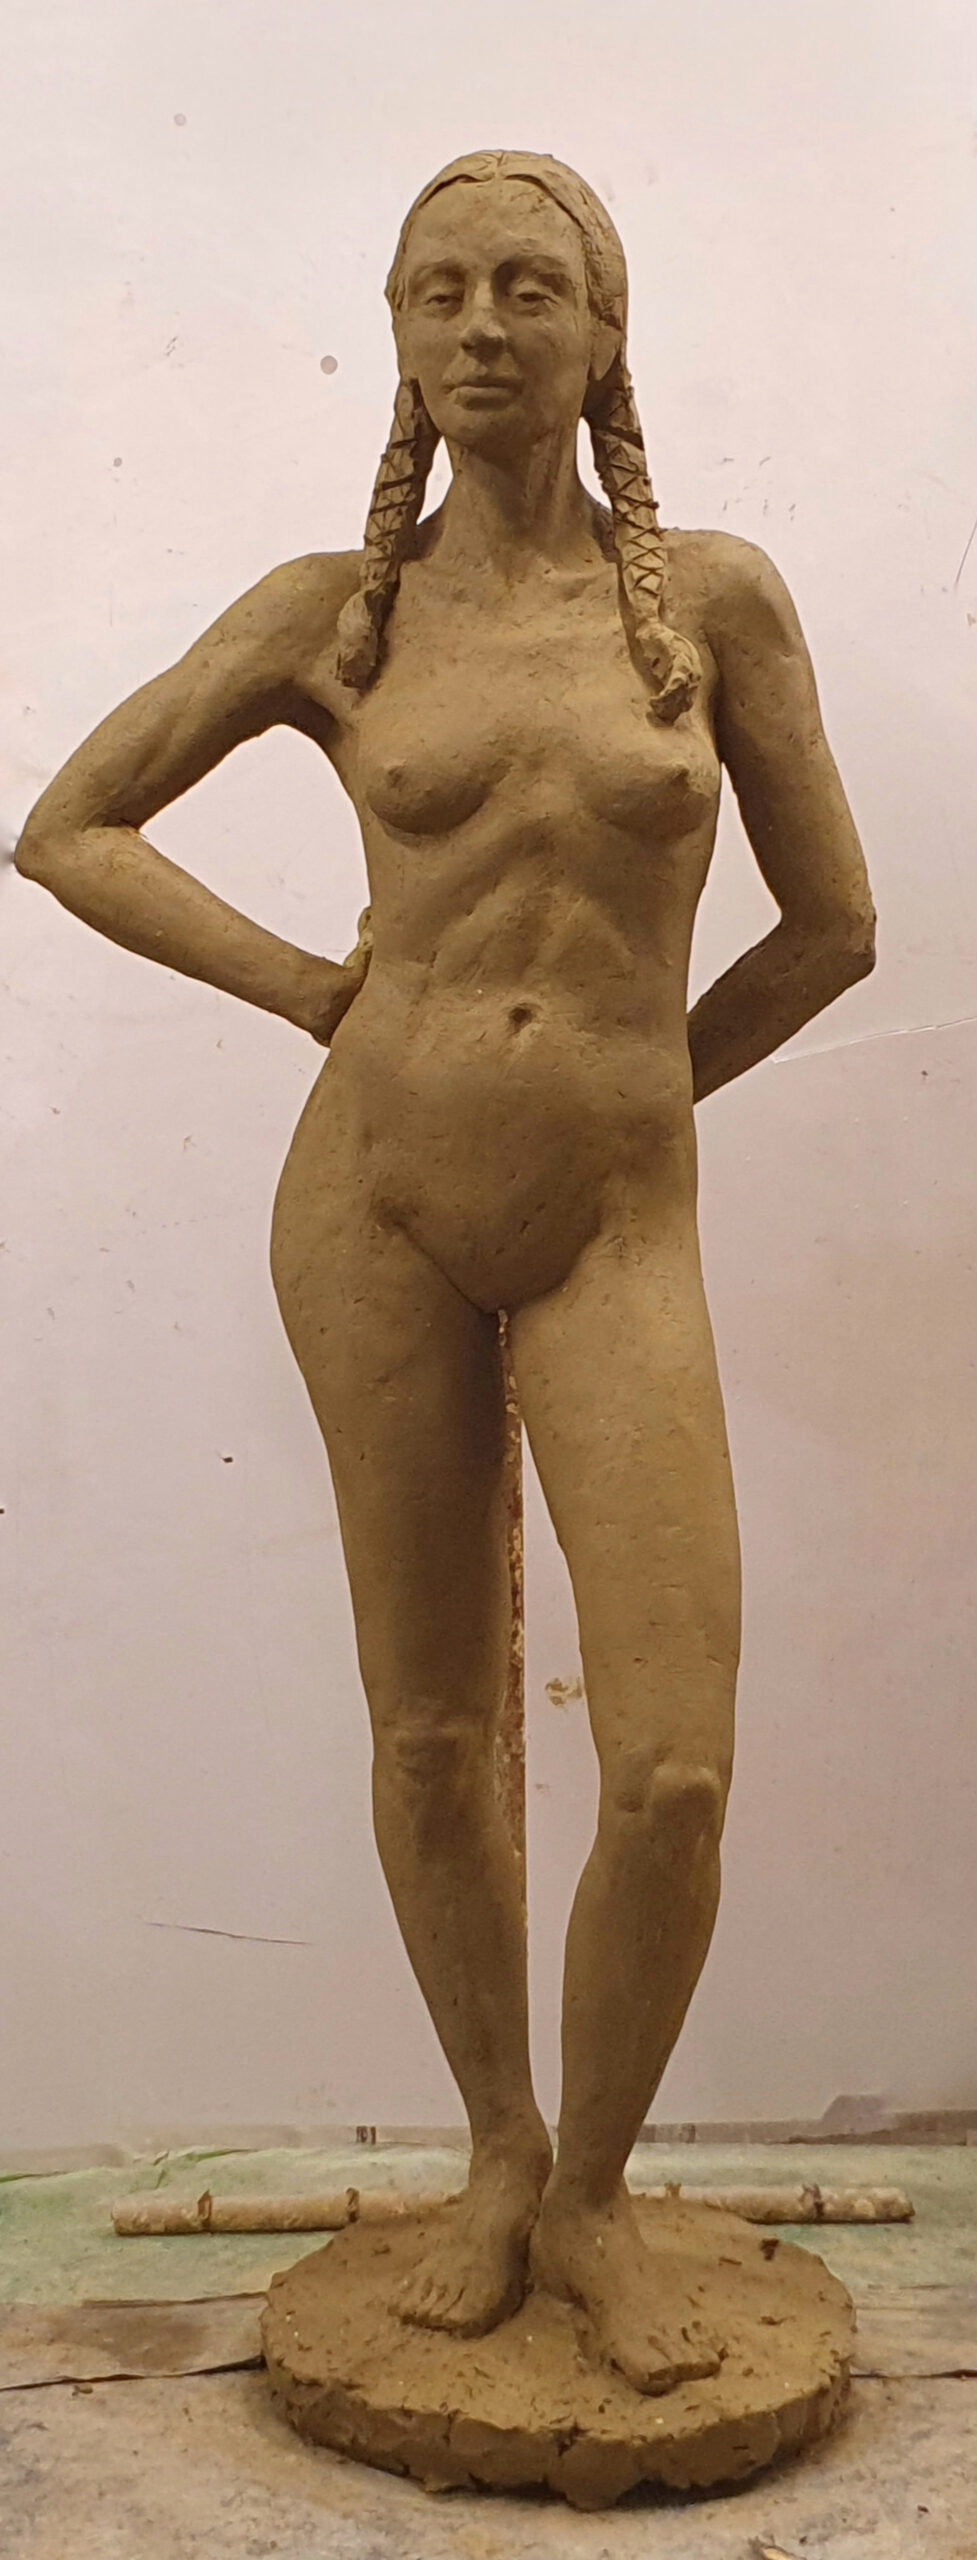 zdjęcie przedstawia rzeźbę wykonaną w glinie: postać kobiecą stojącą w kontrapoście, z ciężarem ciała na prawej nodze. Ręce ugięte w łokciach, oparte na plecach. Postać stoi na podstawie. Ujęcie frontalne